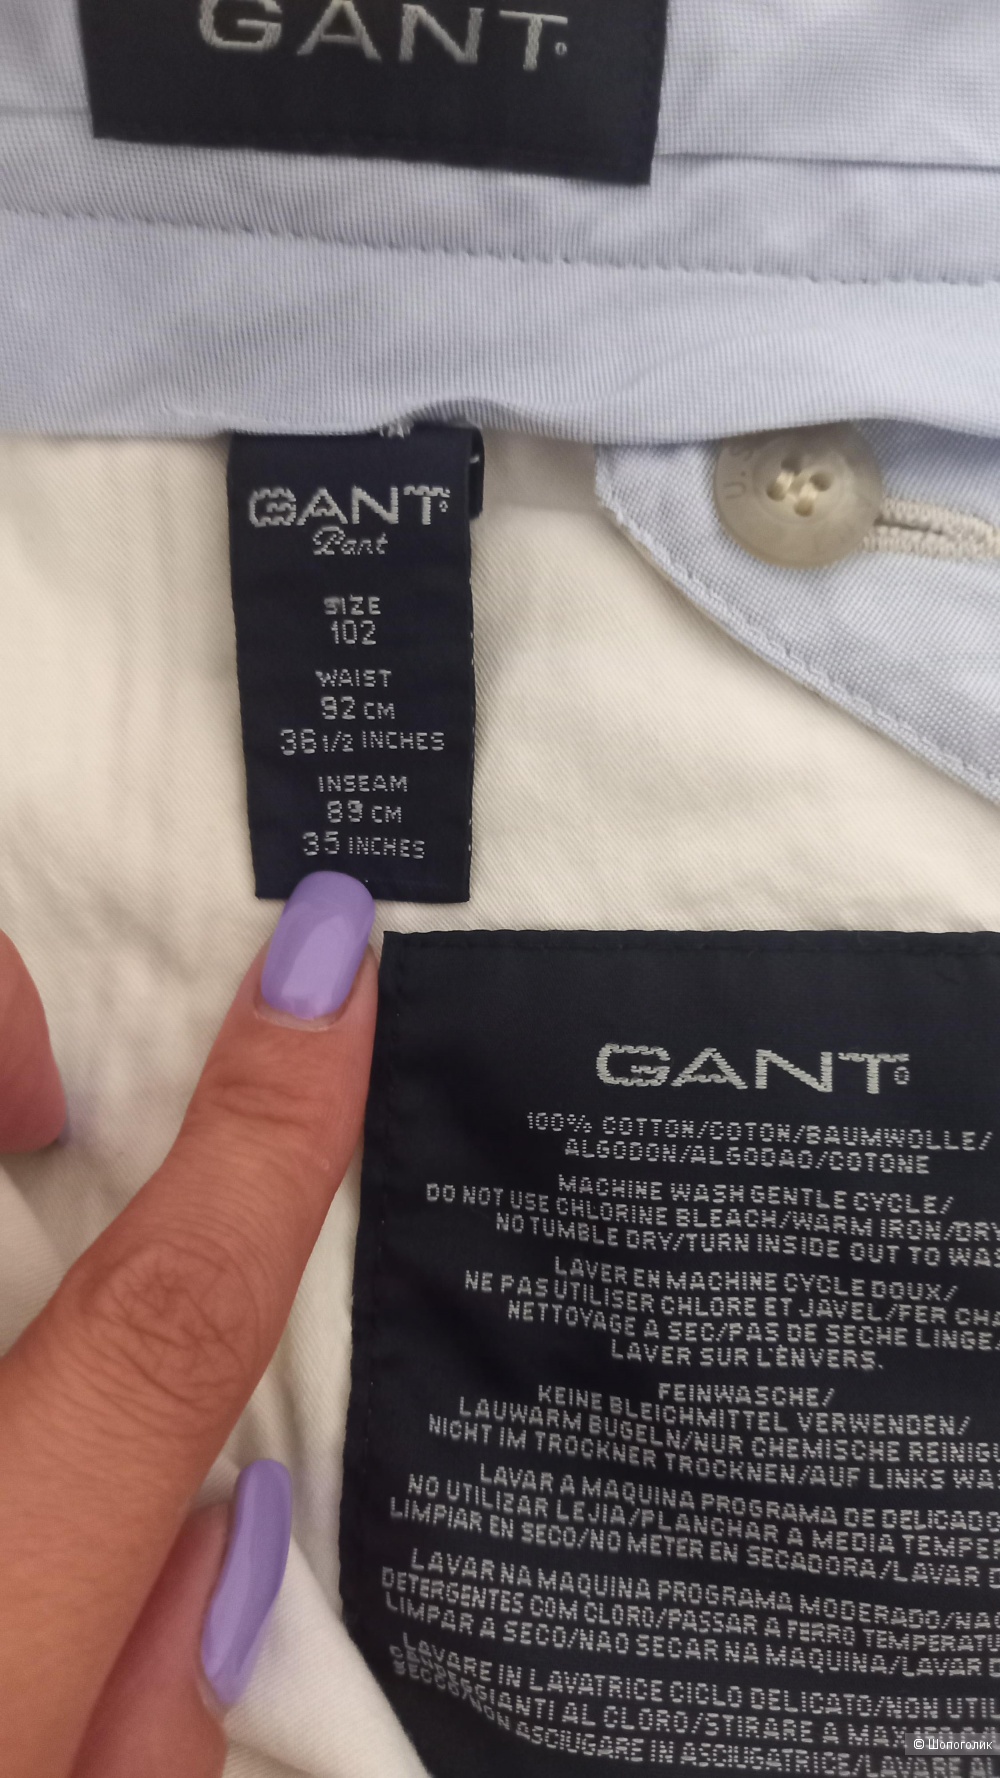 Домашние брюки GANT 52 размер